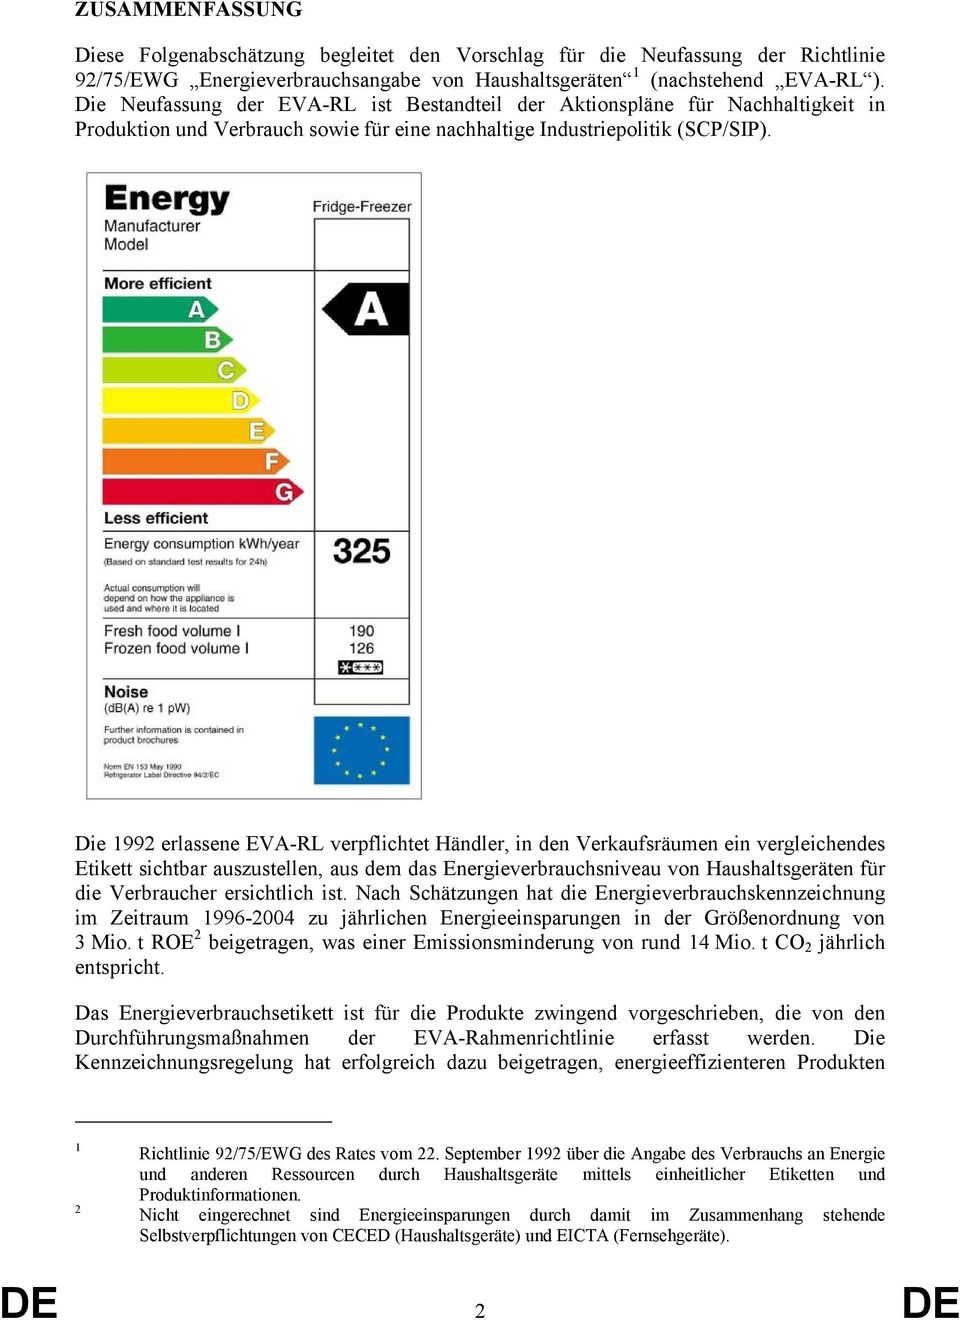 Die 1992 erlassene EVA-RL verpflichtet Händler, in den Verkaufsräumen ein vergleichendes Etikett sichtbar auszustellen, aus dem das Energieverbrauchsniveau von Haushaltsgeräten für die Verbraucher